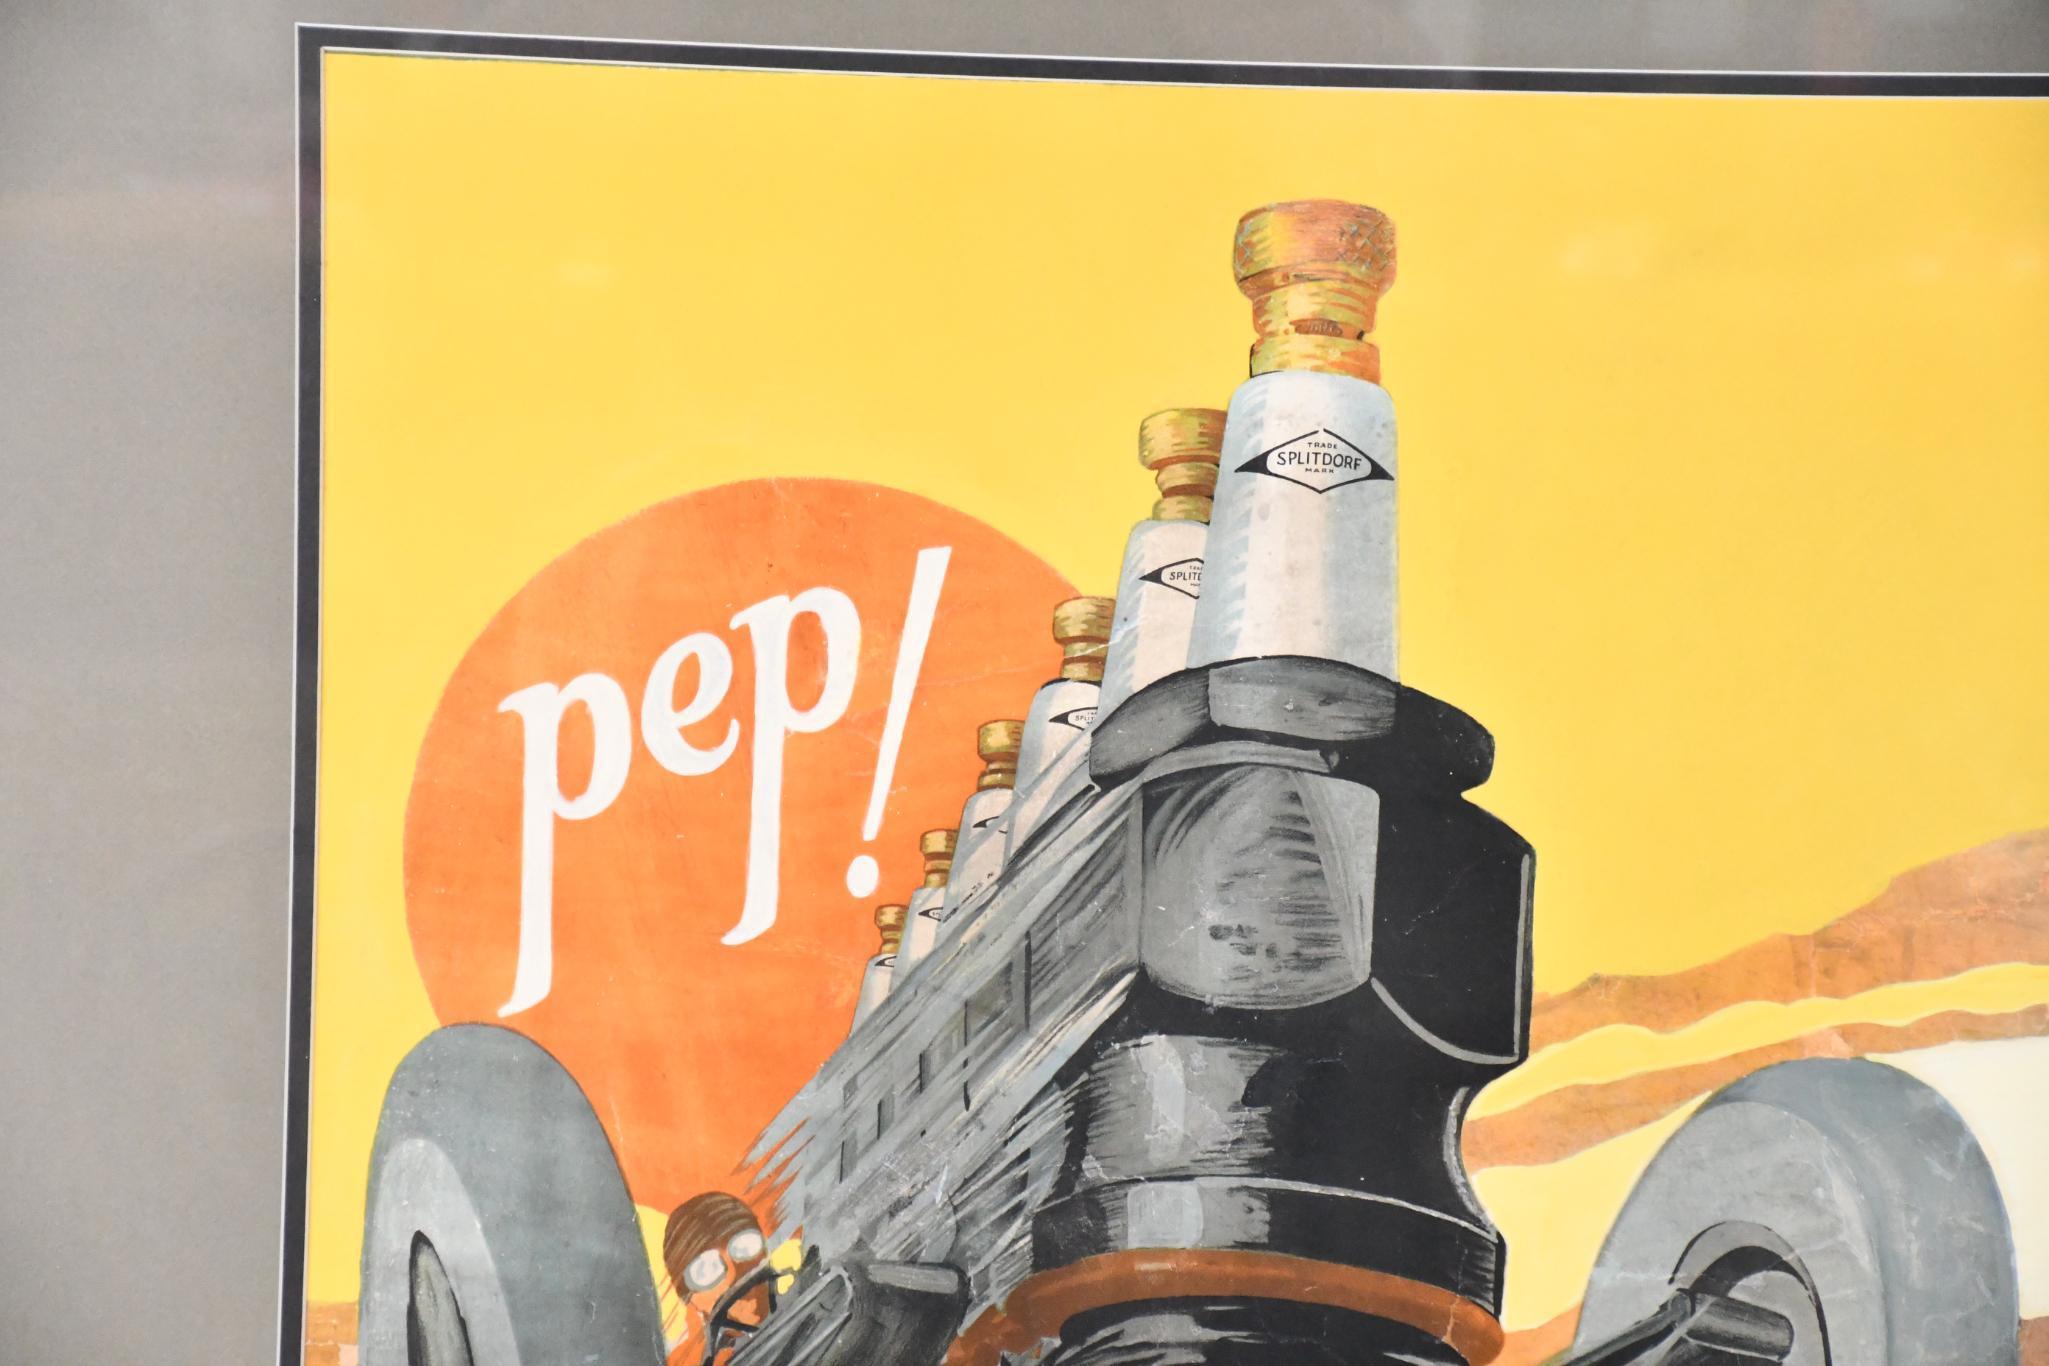 Splitdorf "Pep"! Racecar Poster